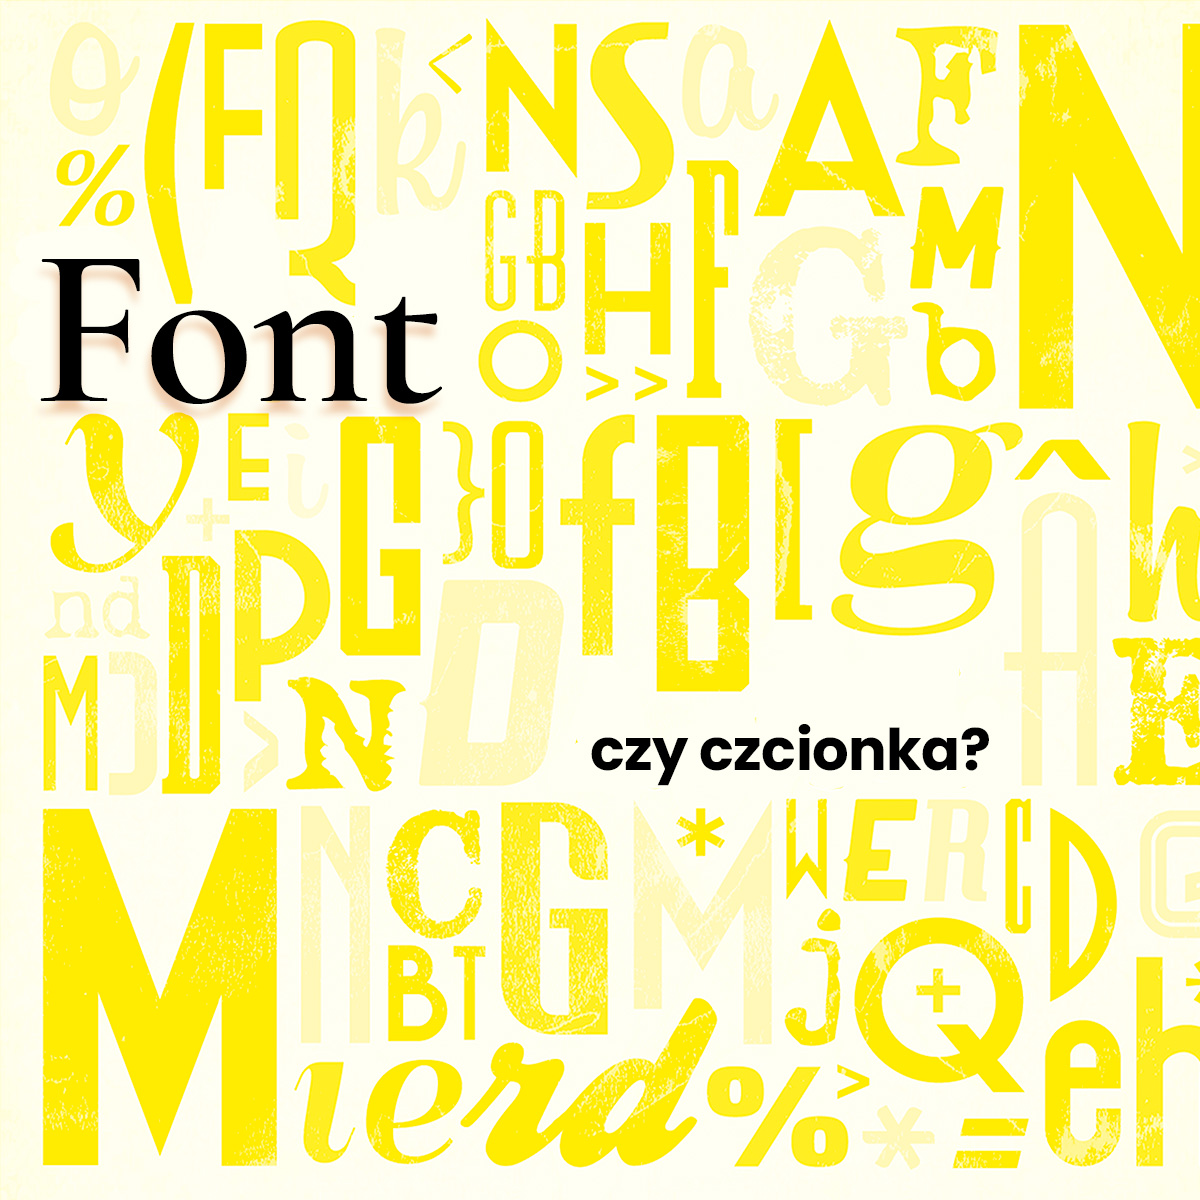 Typografia w marketingu, czyli jak dobrać najlepszy font